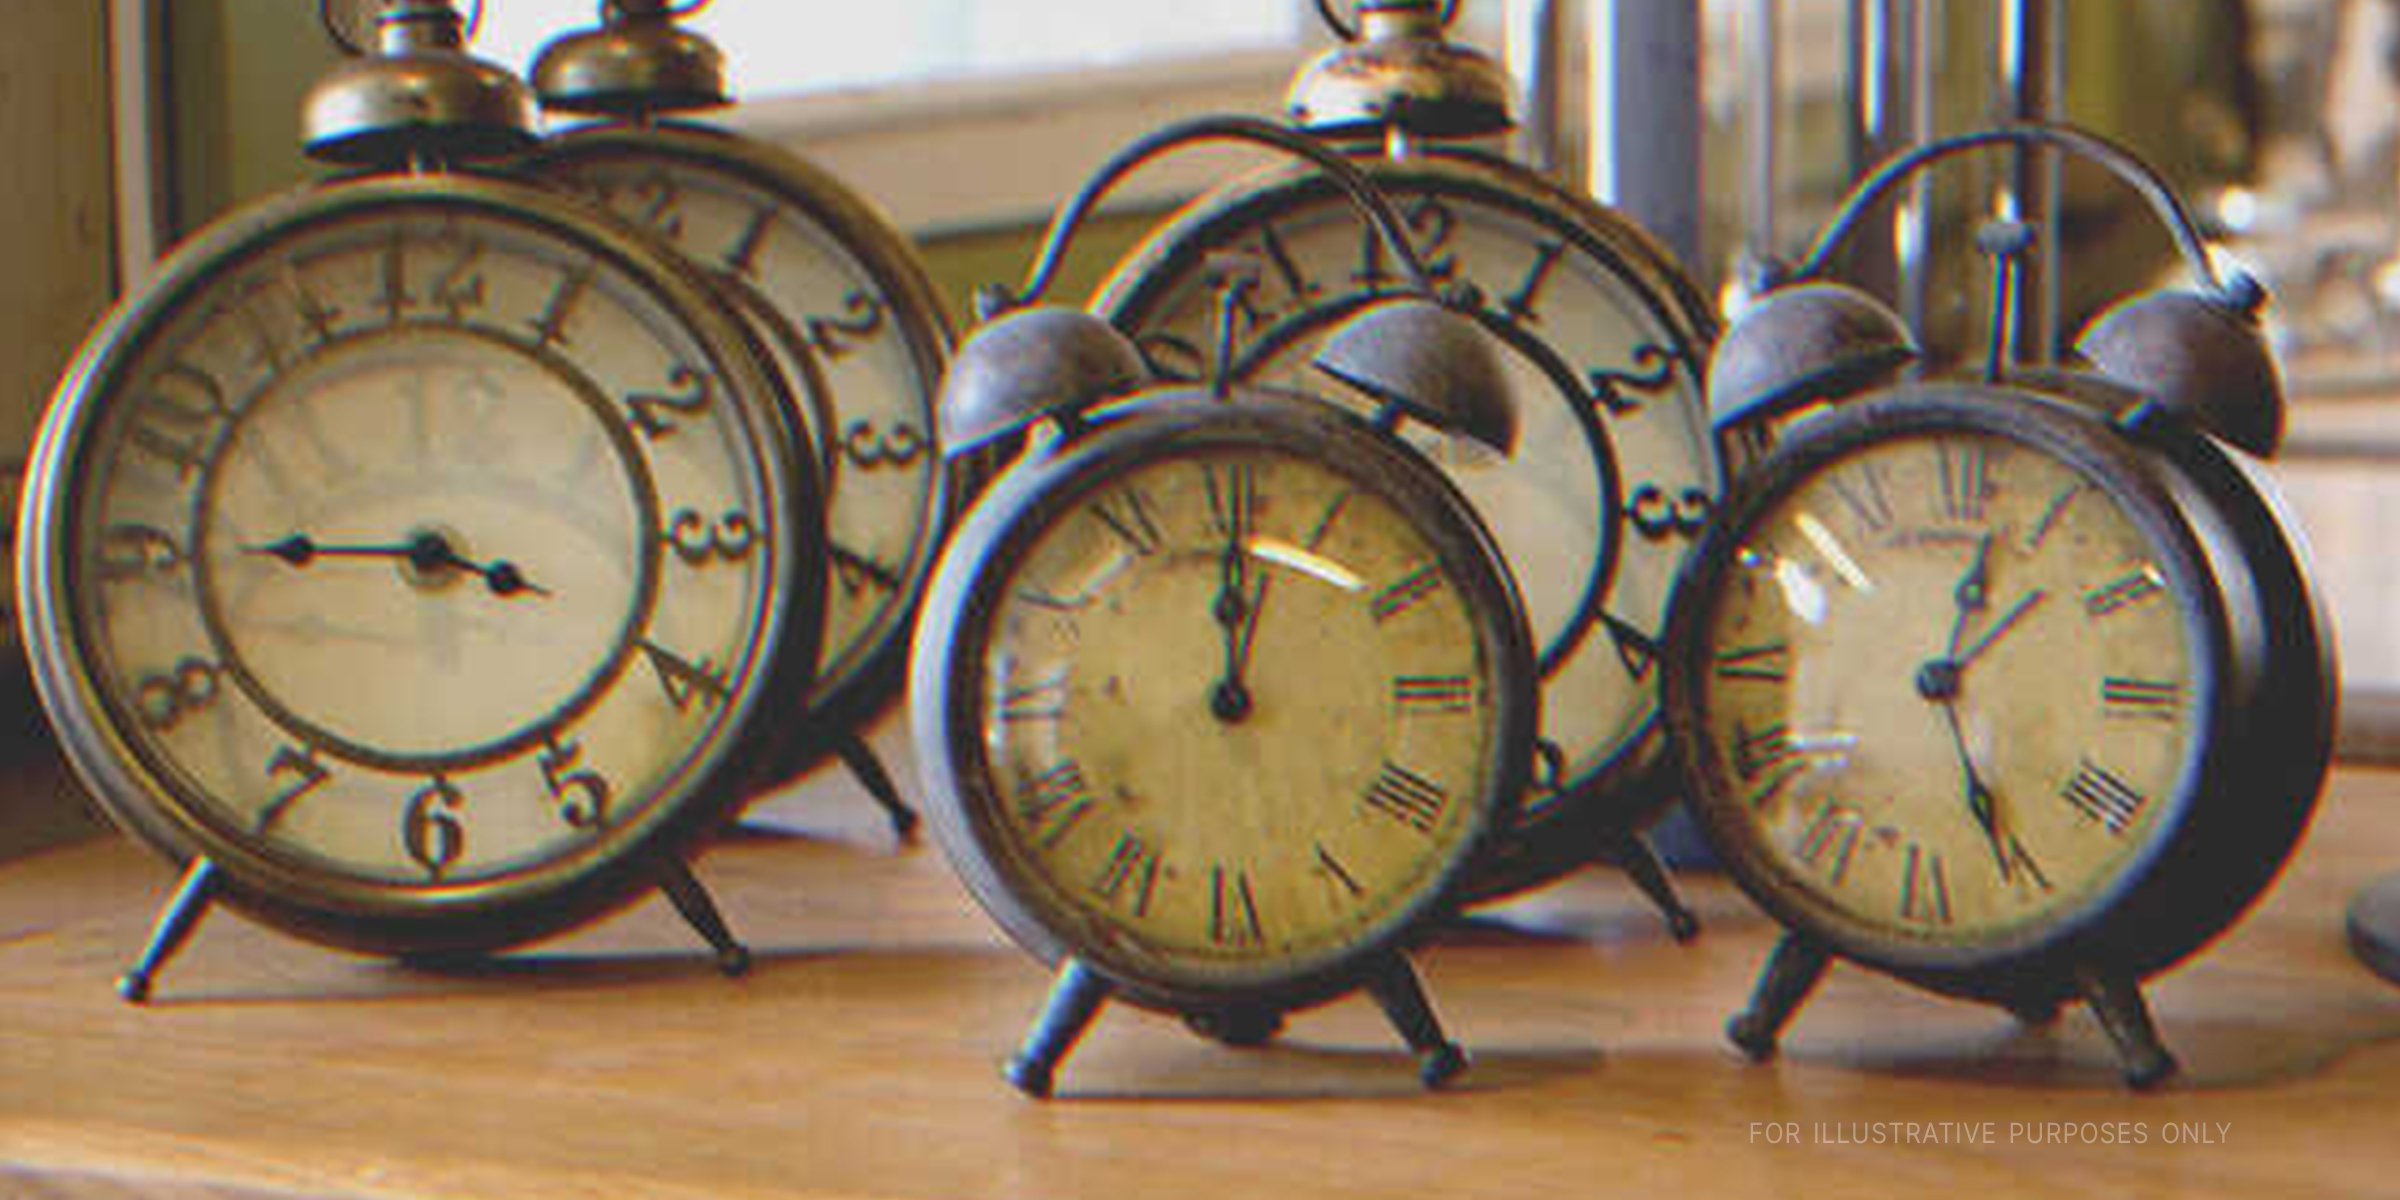 Cinco despertadores antiguos sobre una mesa | Fuente: Shutterstock